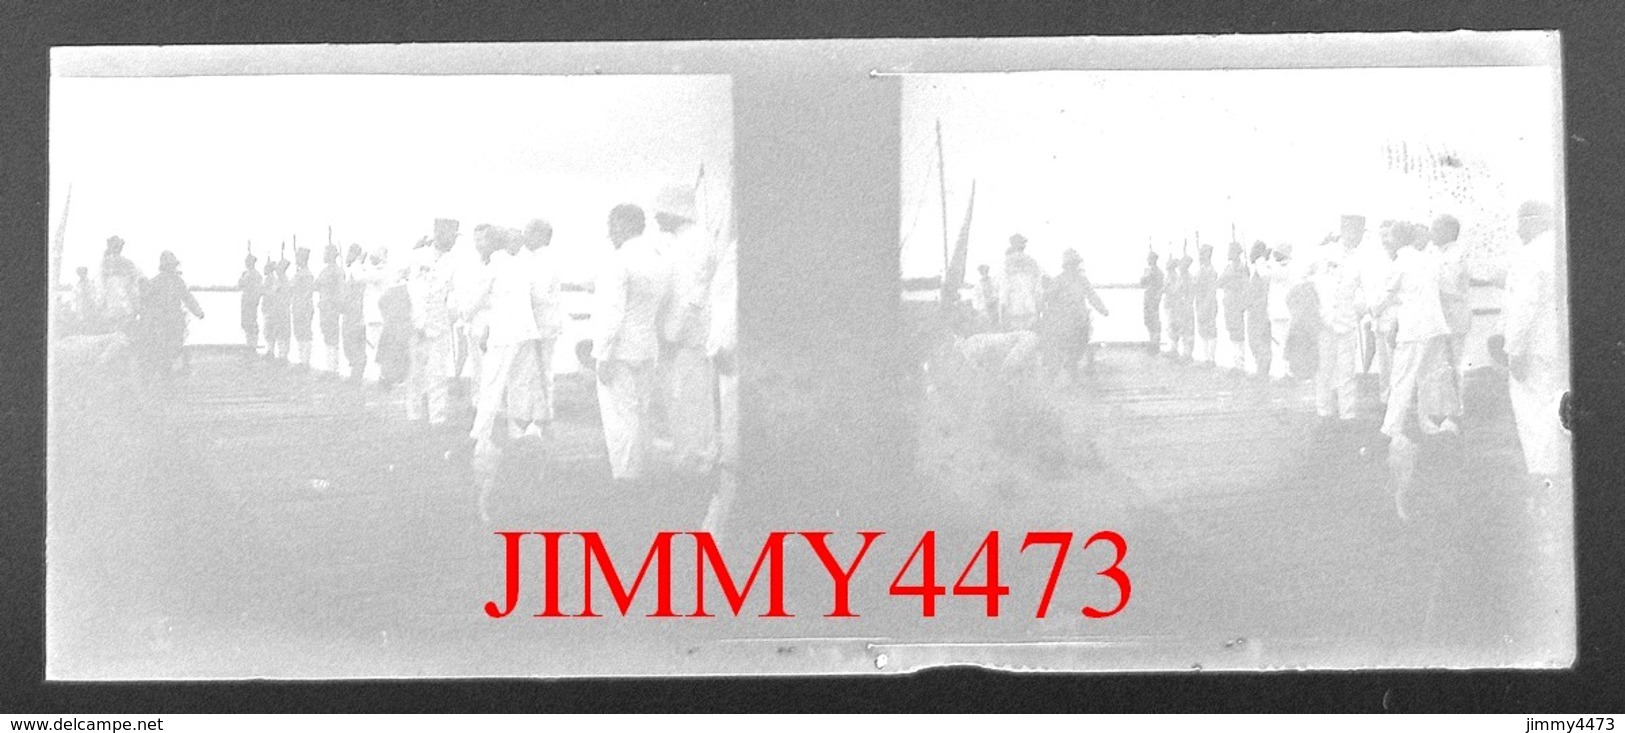 Plaque Photo De Verre Stéréo - Groupe De Soldats Coloniaux En Afrique, à Identifier - Taille 107 X 43 Mlls - Plaques De Verre